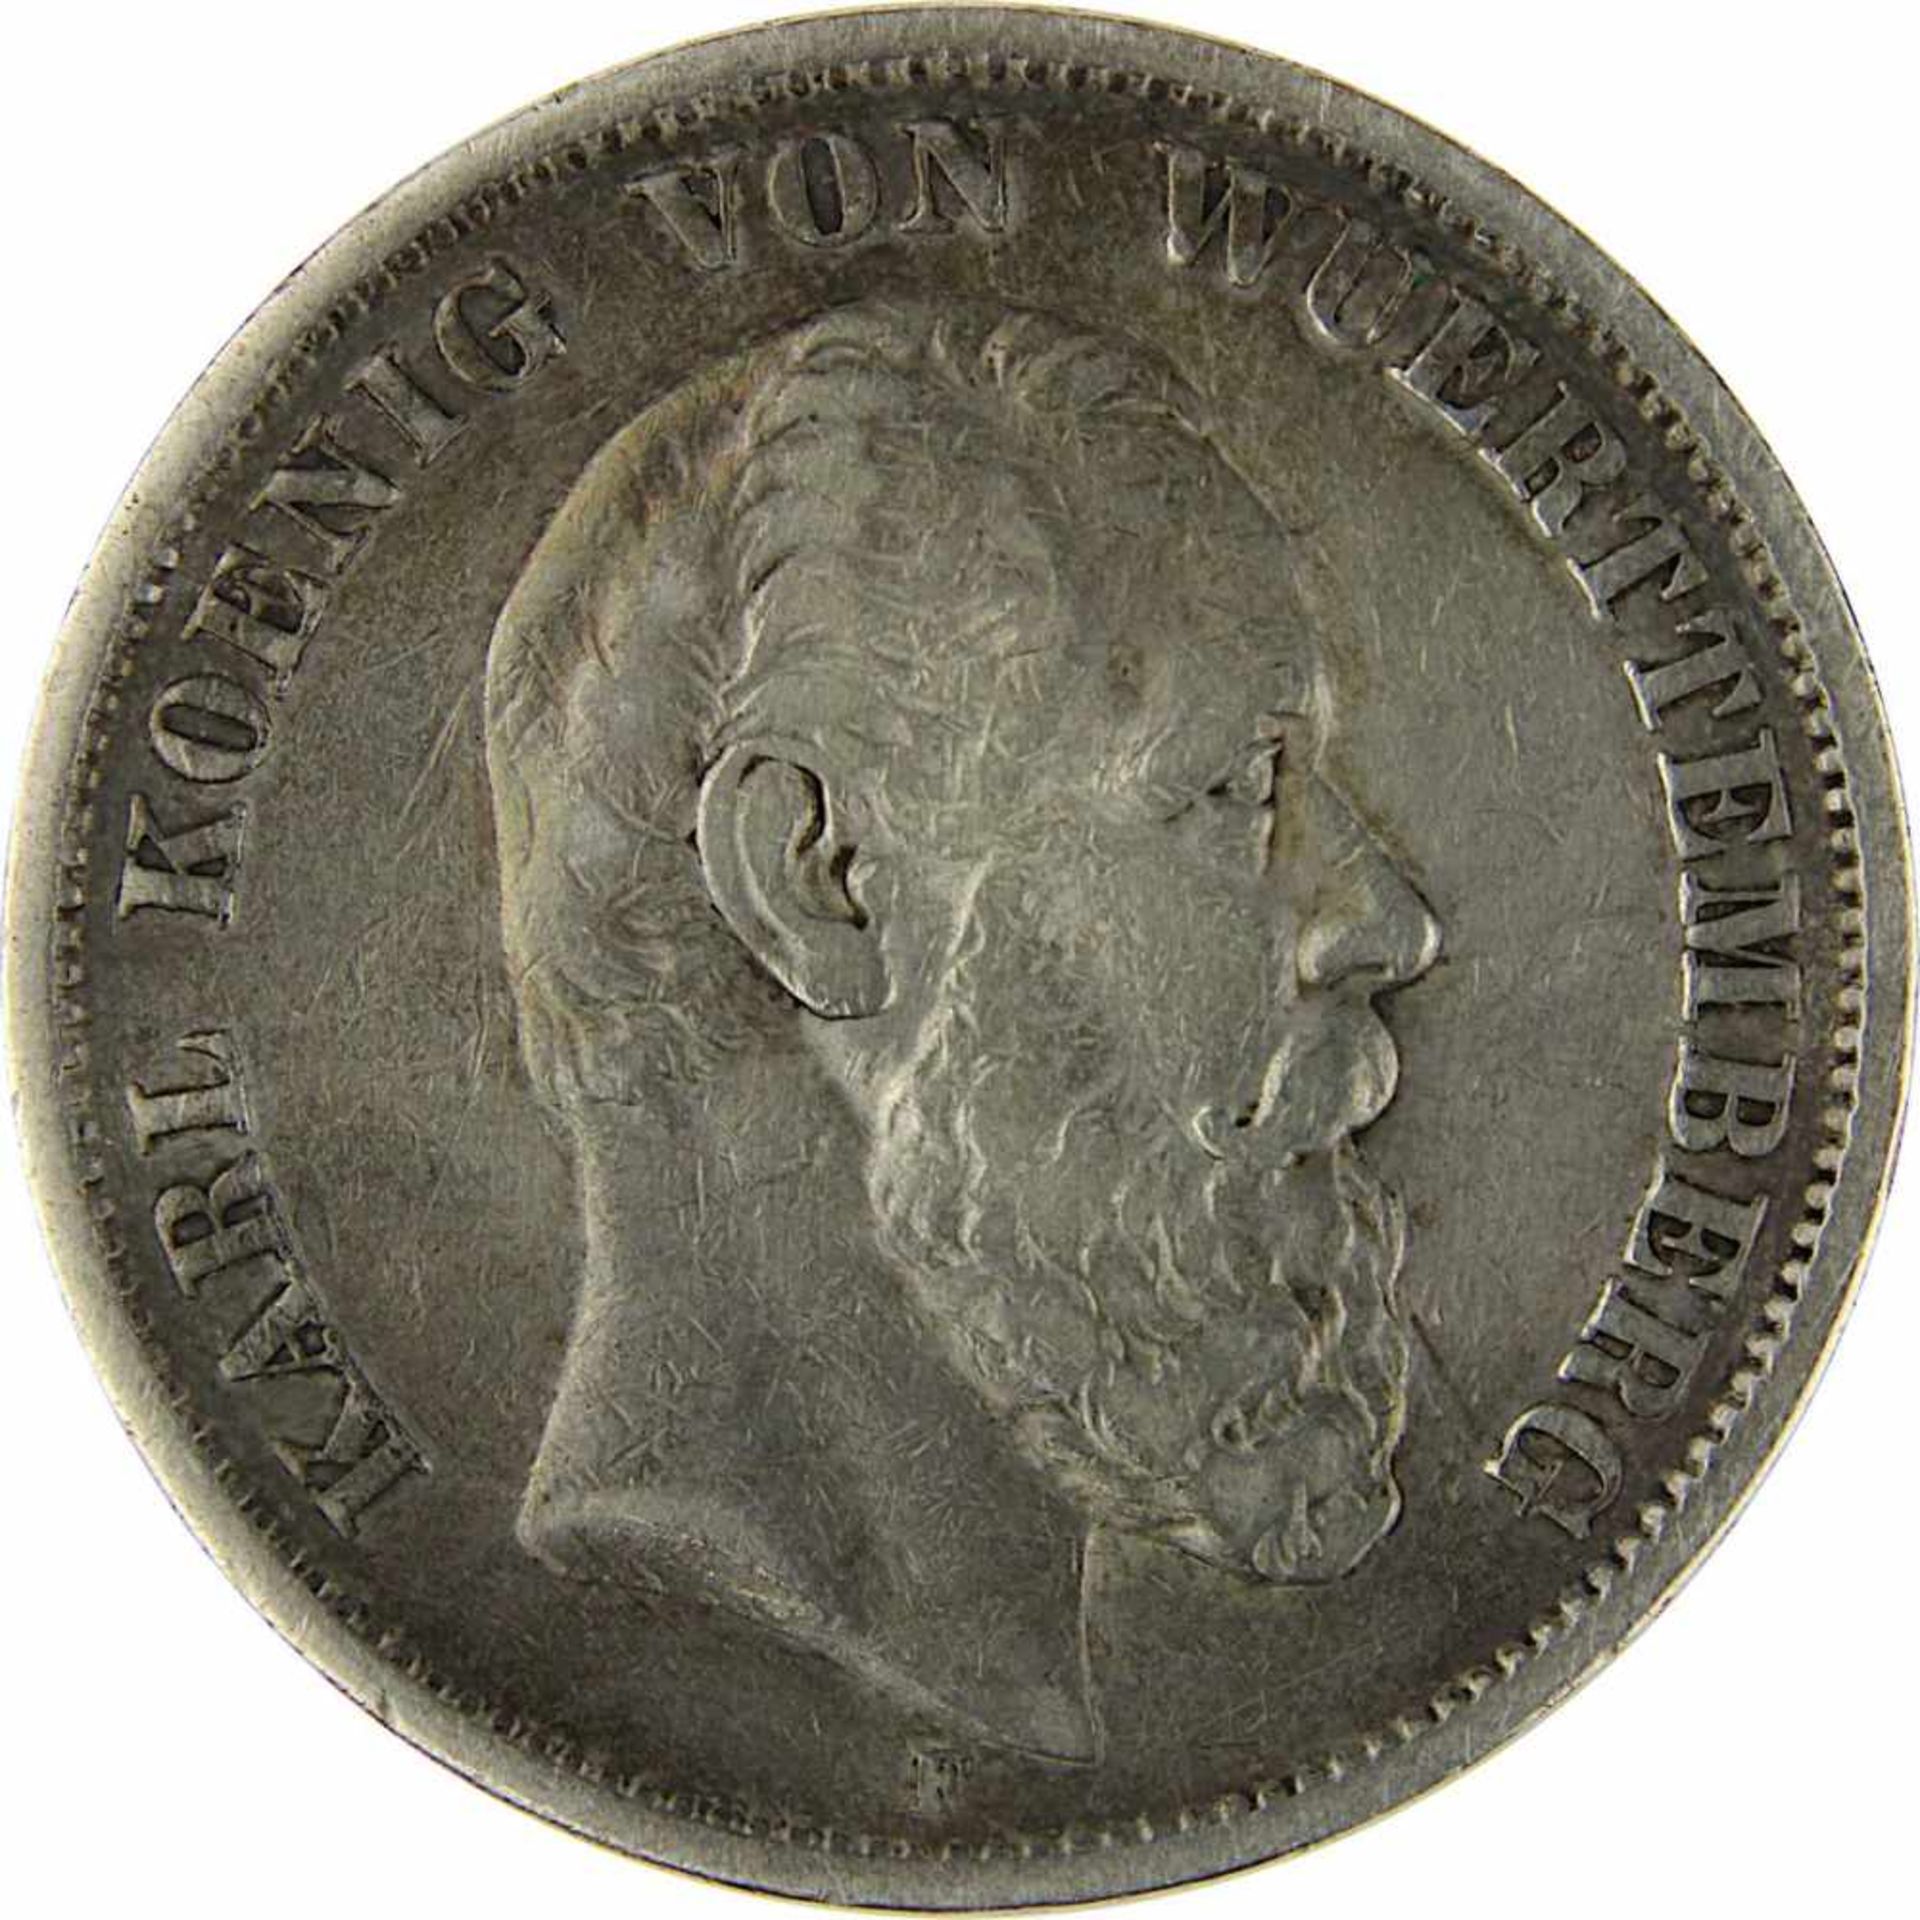 5 Mark 1875 F König Karl von Württemberg, Silber, sehr schöner Zustand, D 3,8 cm, Gewicht 27,43 g. - Bild 2 aus 3